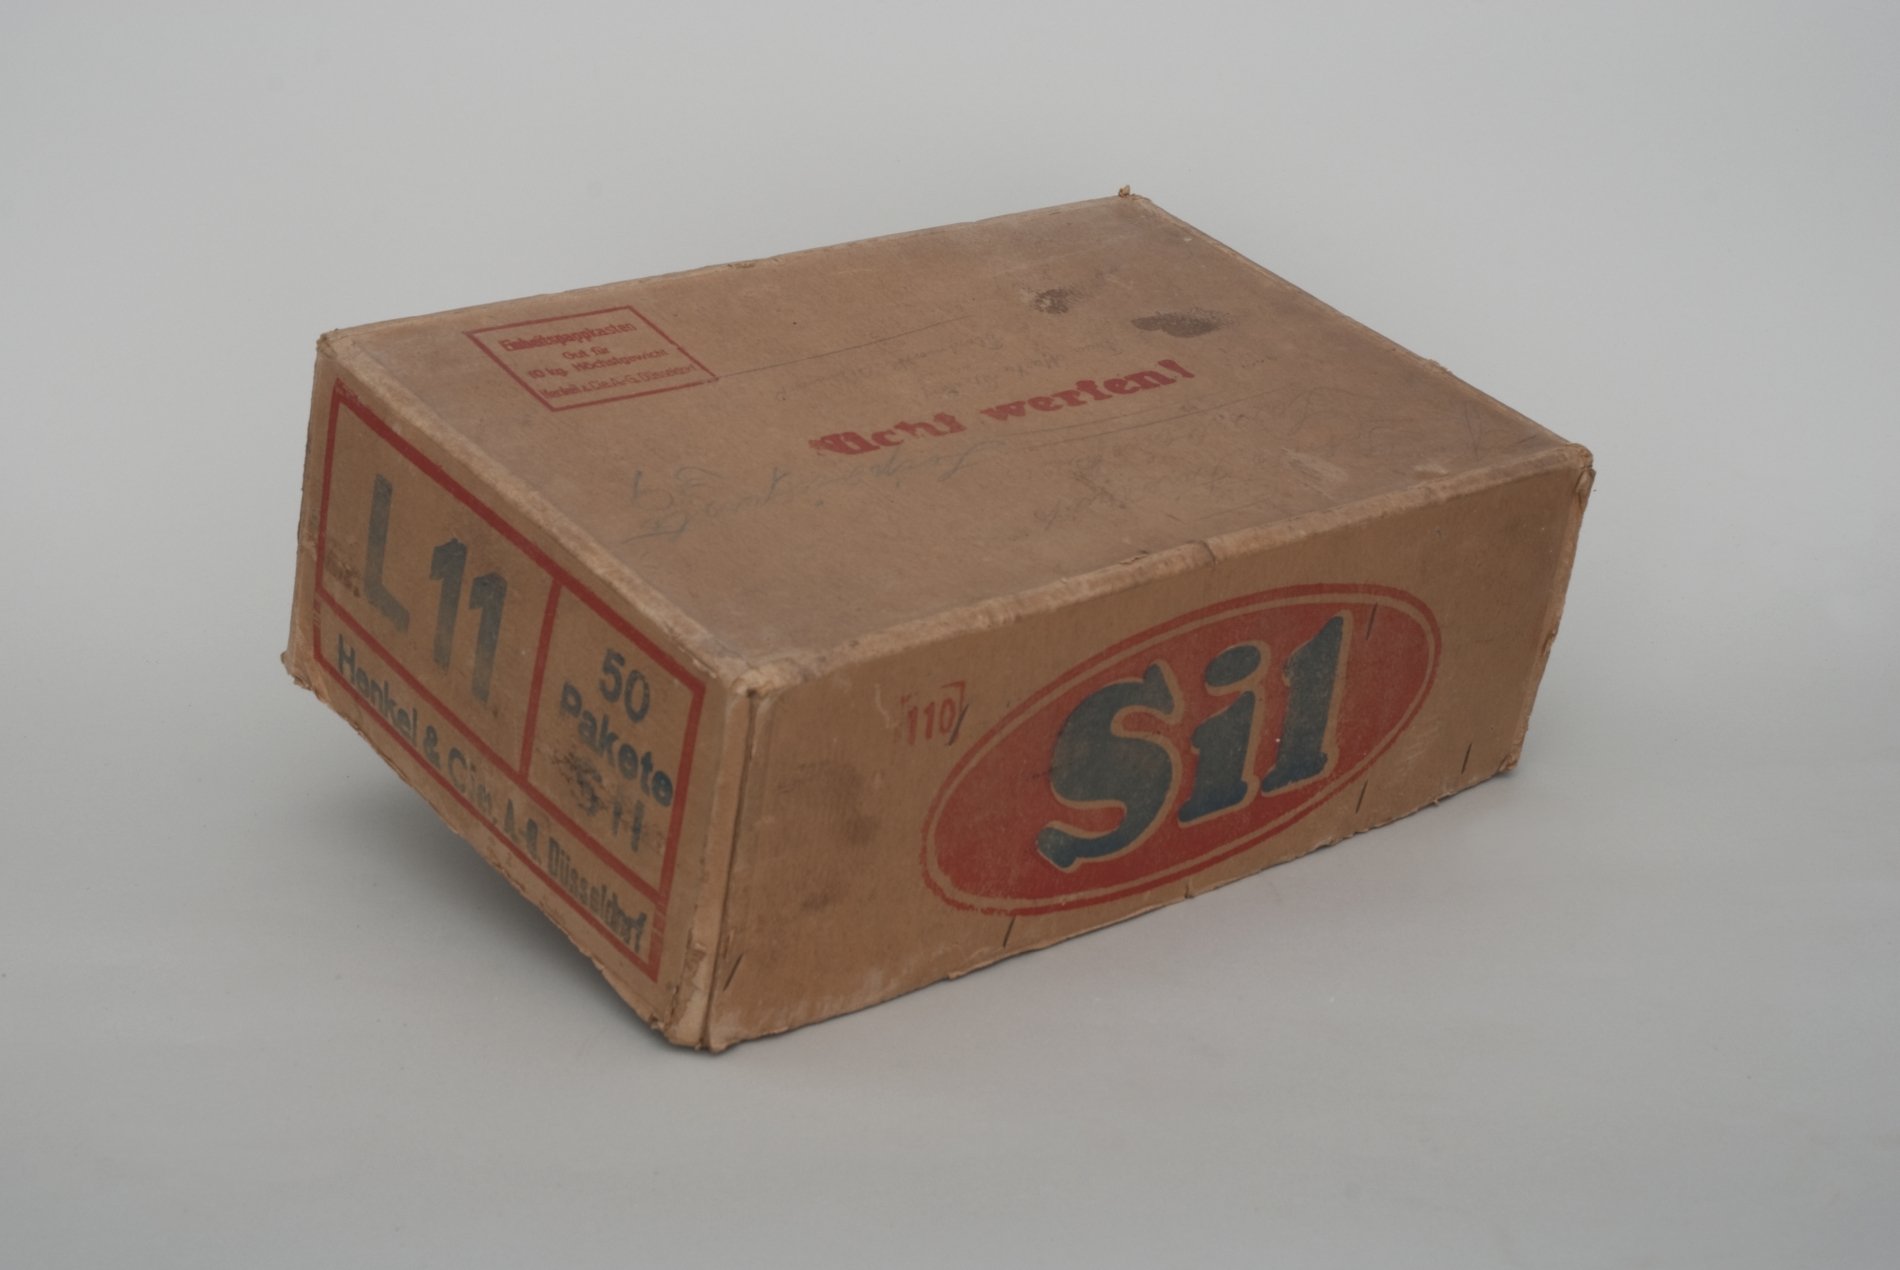 Karton für das Reinigungsmittel "Sil" von "Henkel" (Stiftung Domäne Dahlem - Landgut und Museum, Weiternutzung nur mit Genehmigung des Museums CC BY-NC-SA)